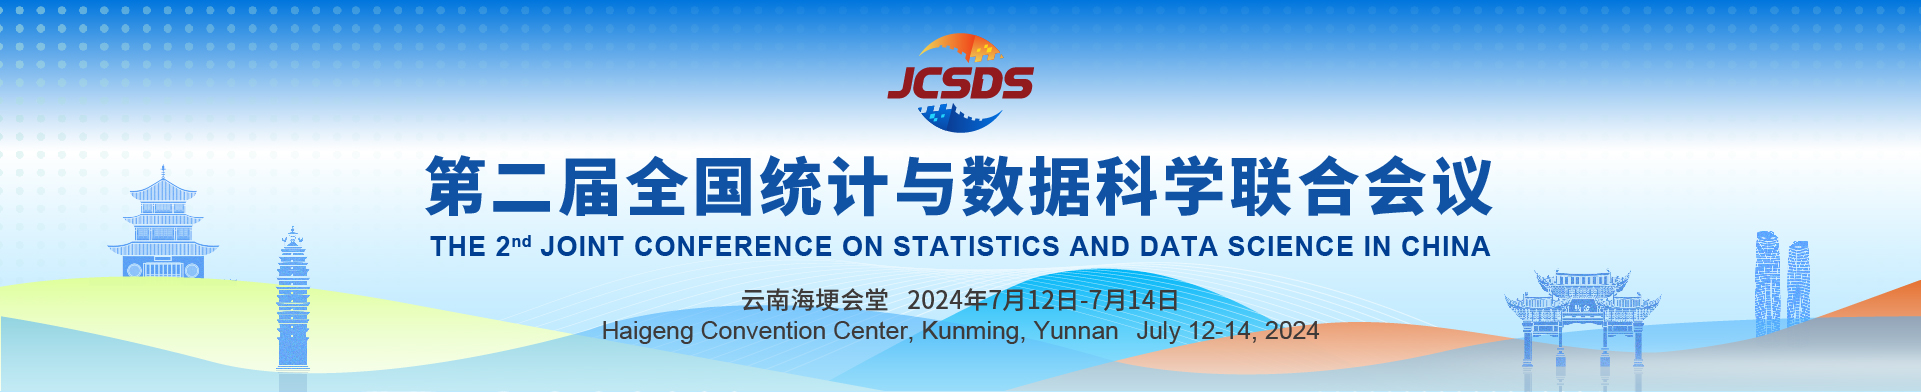 第二届全国统计与数据科学联合会议